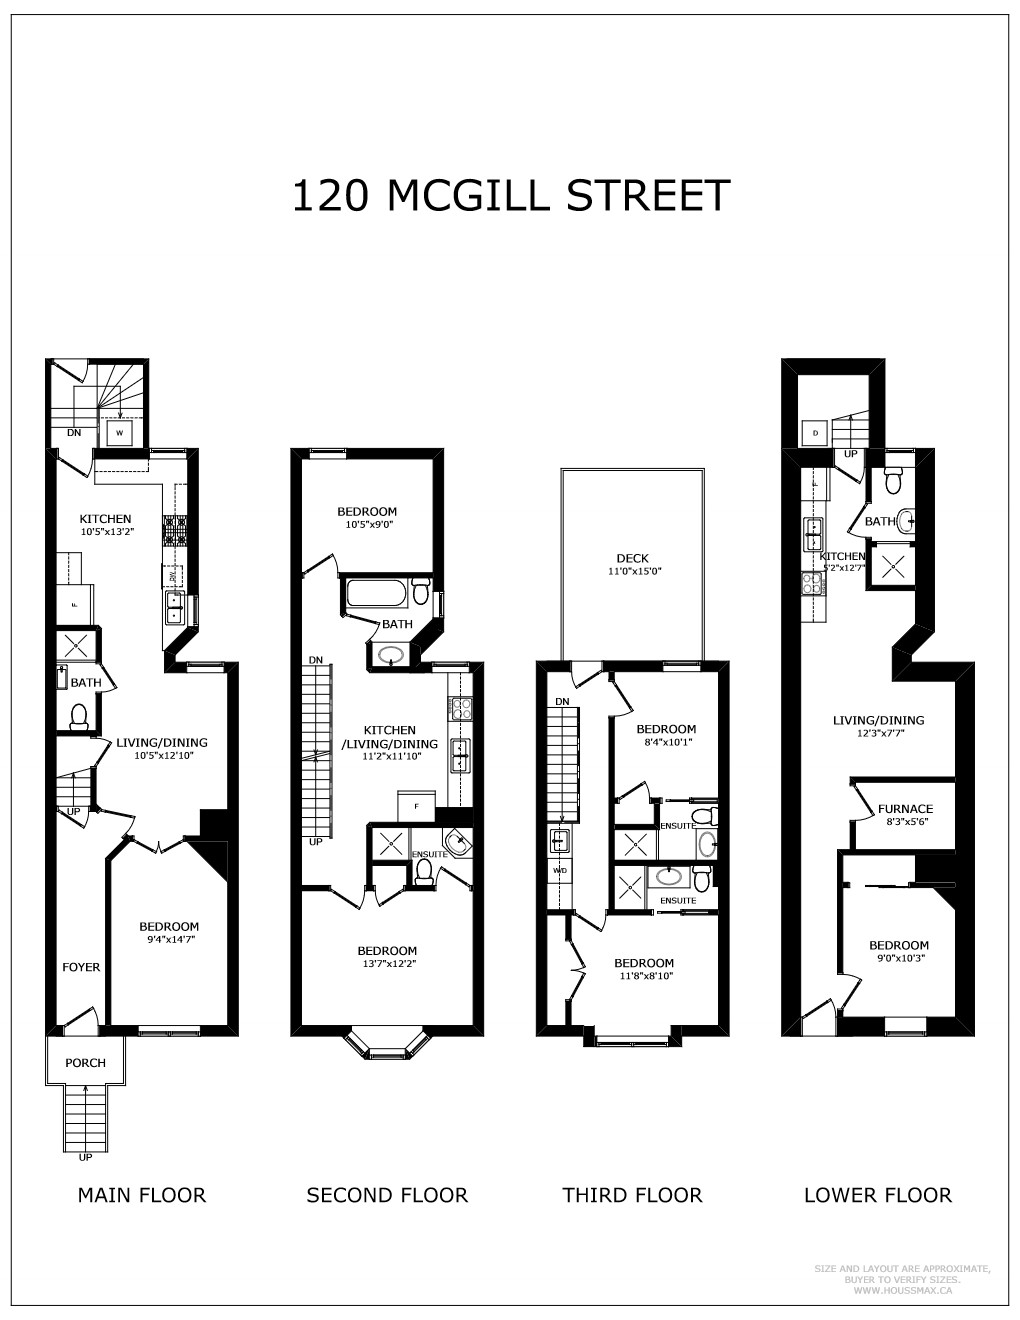 Floor plans for 120 McGill St.